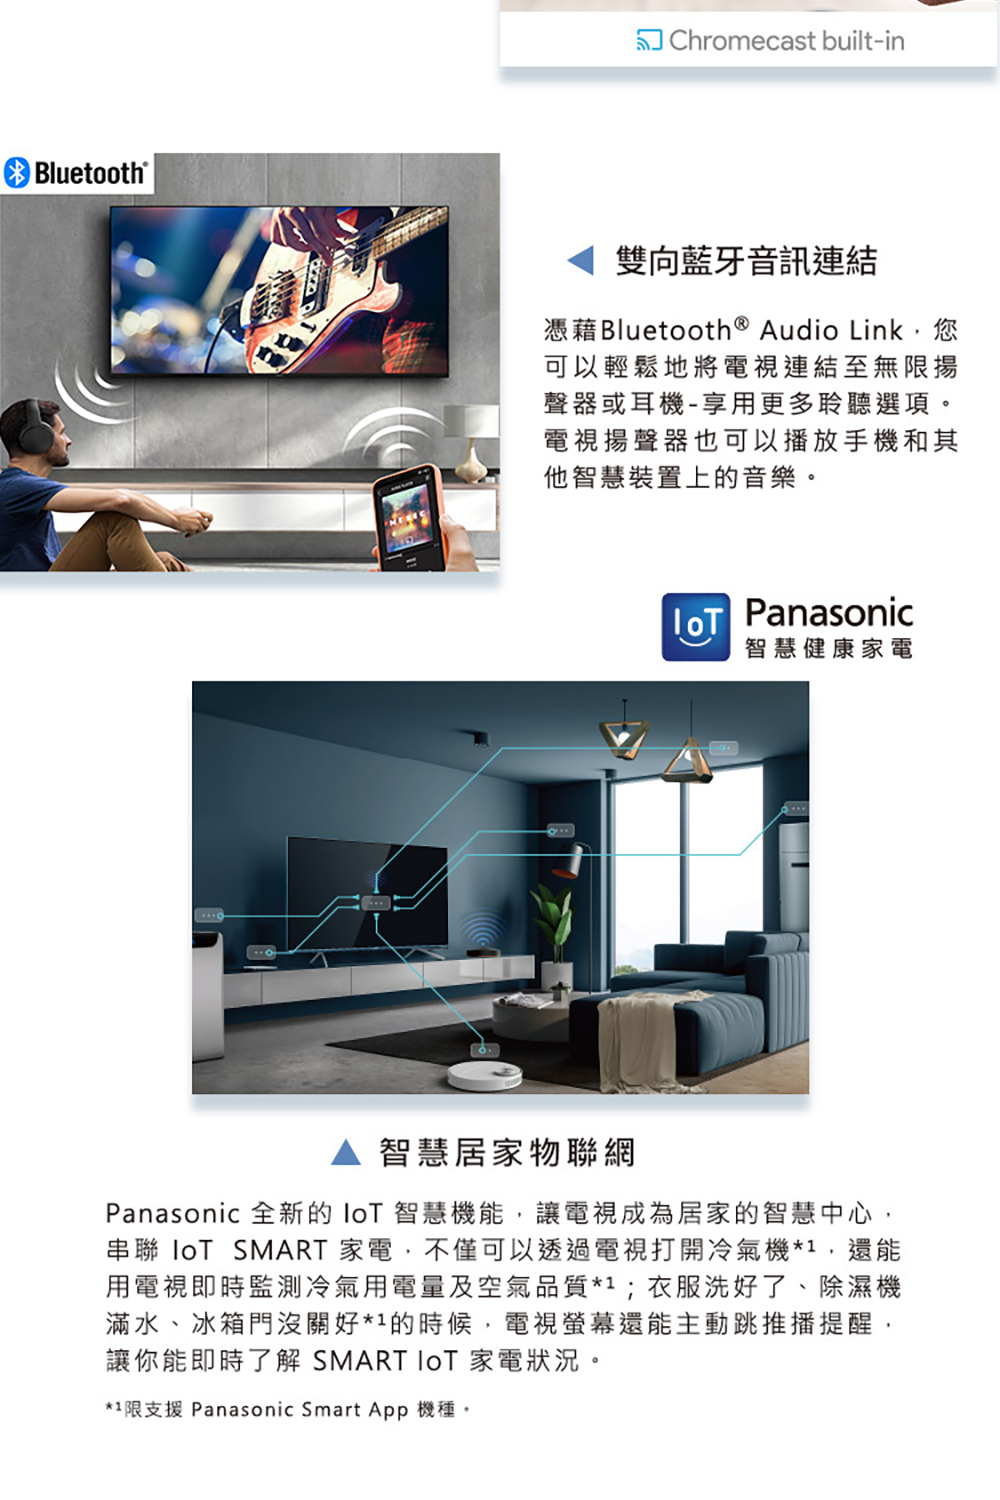 Panasonic 全新的 IoT 智慧機能,讓電視成為居家的智慧中心,